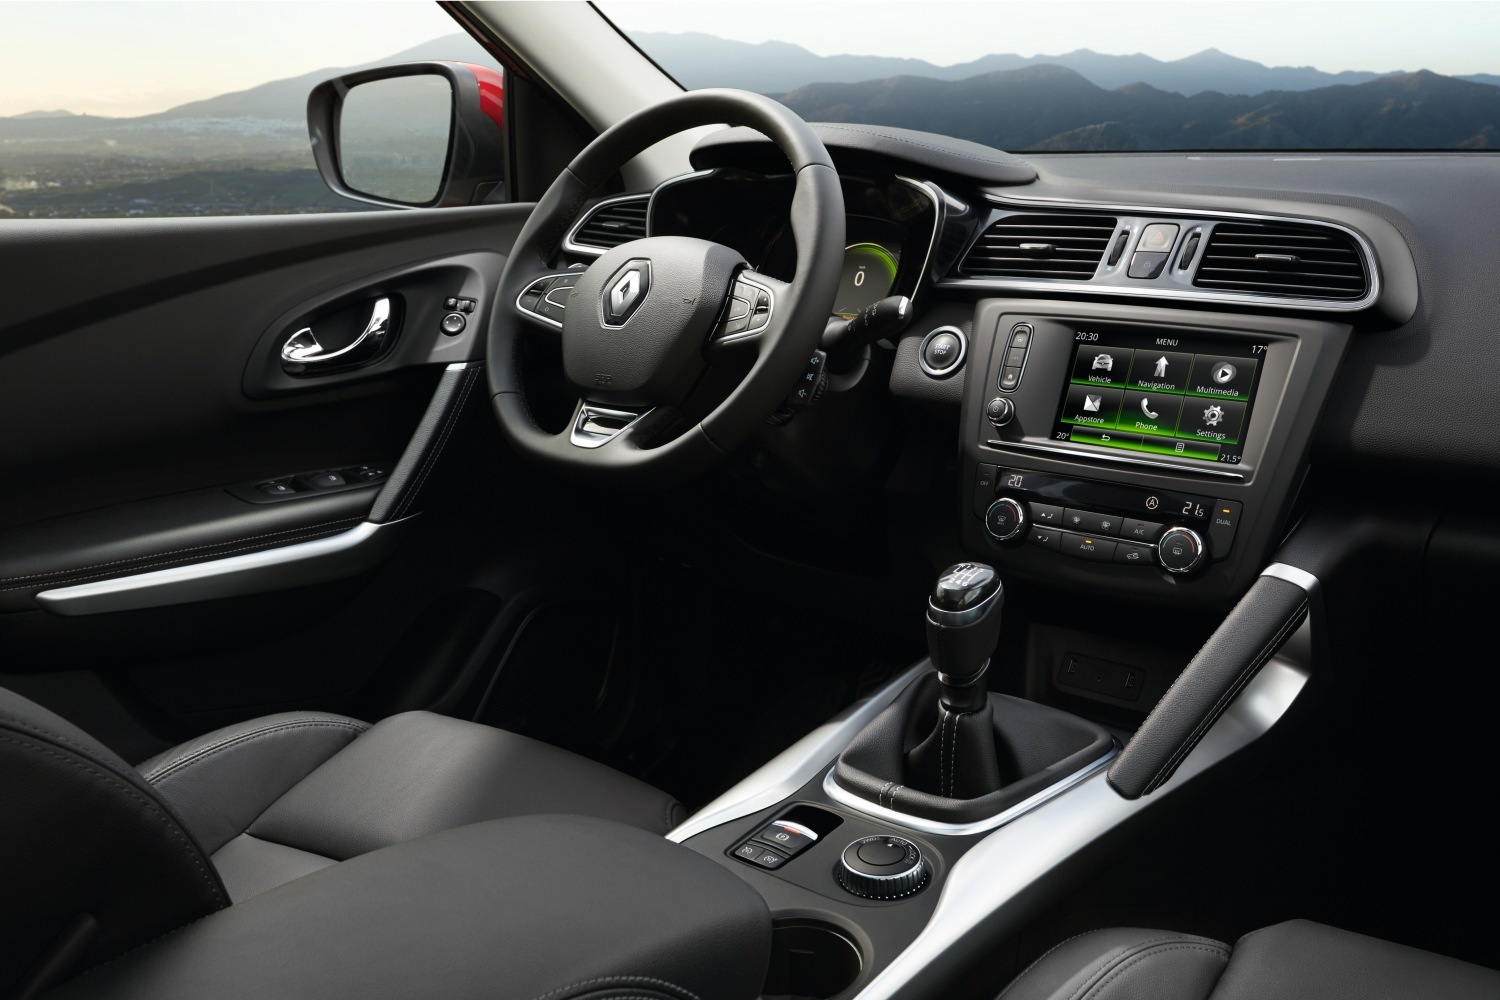 Renault Kadjar interior